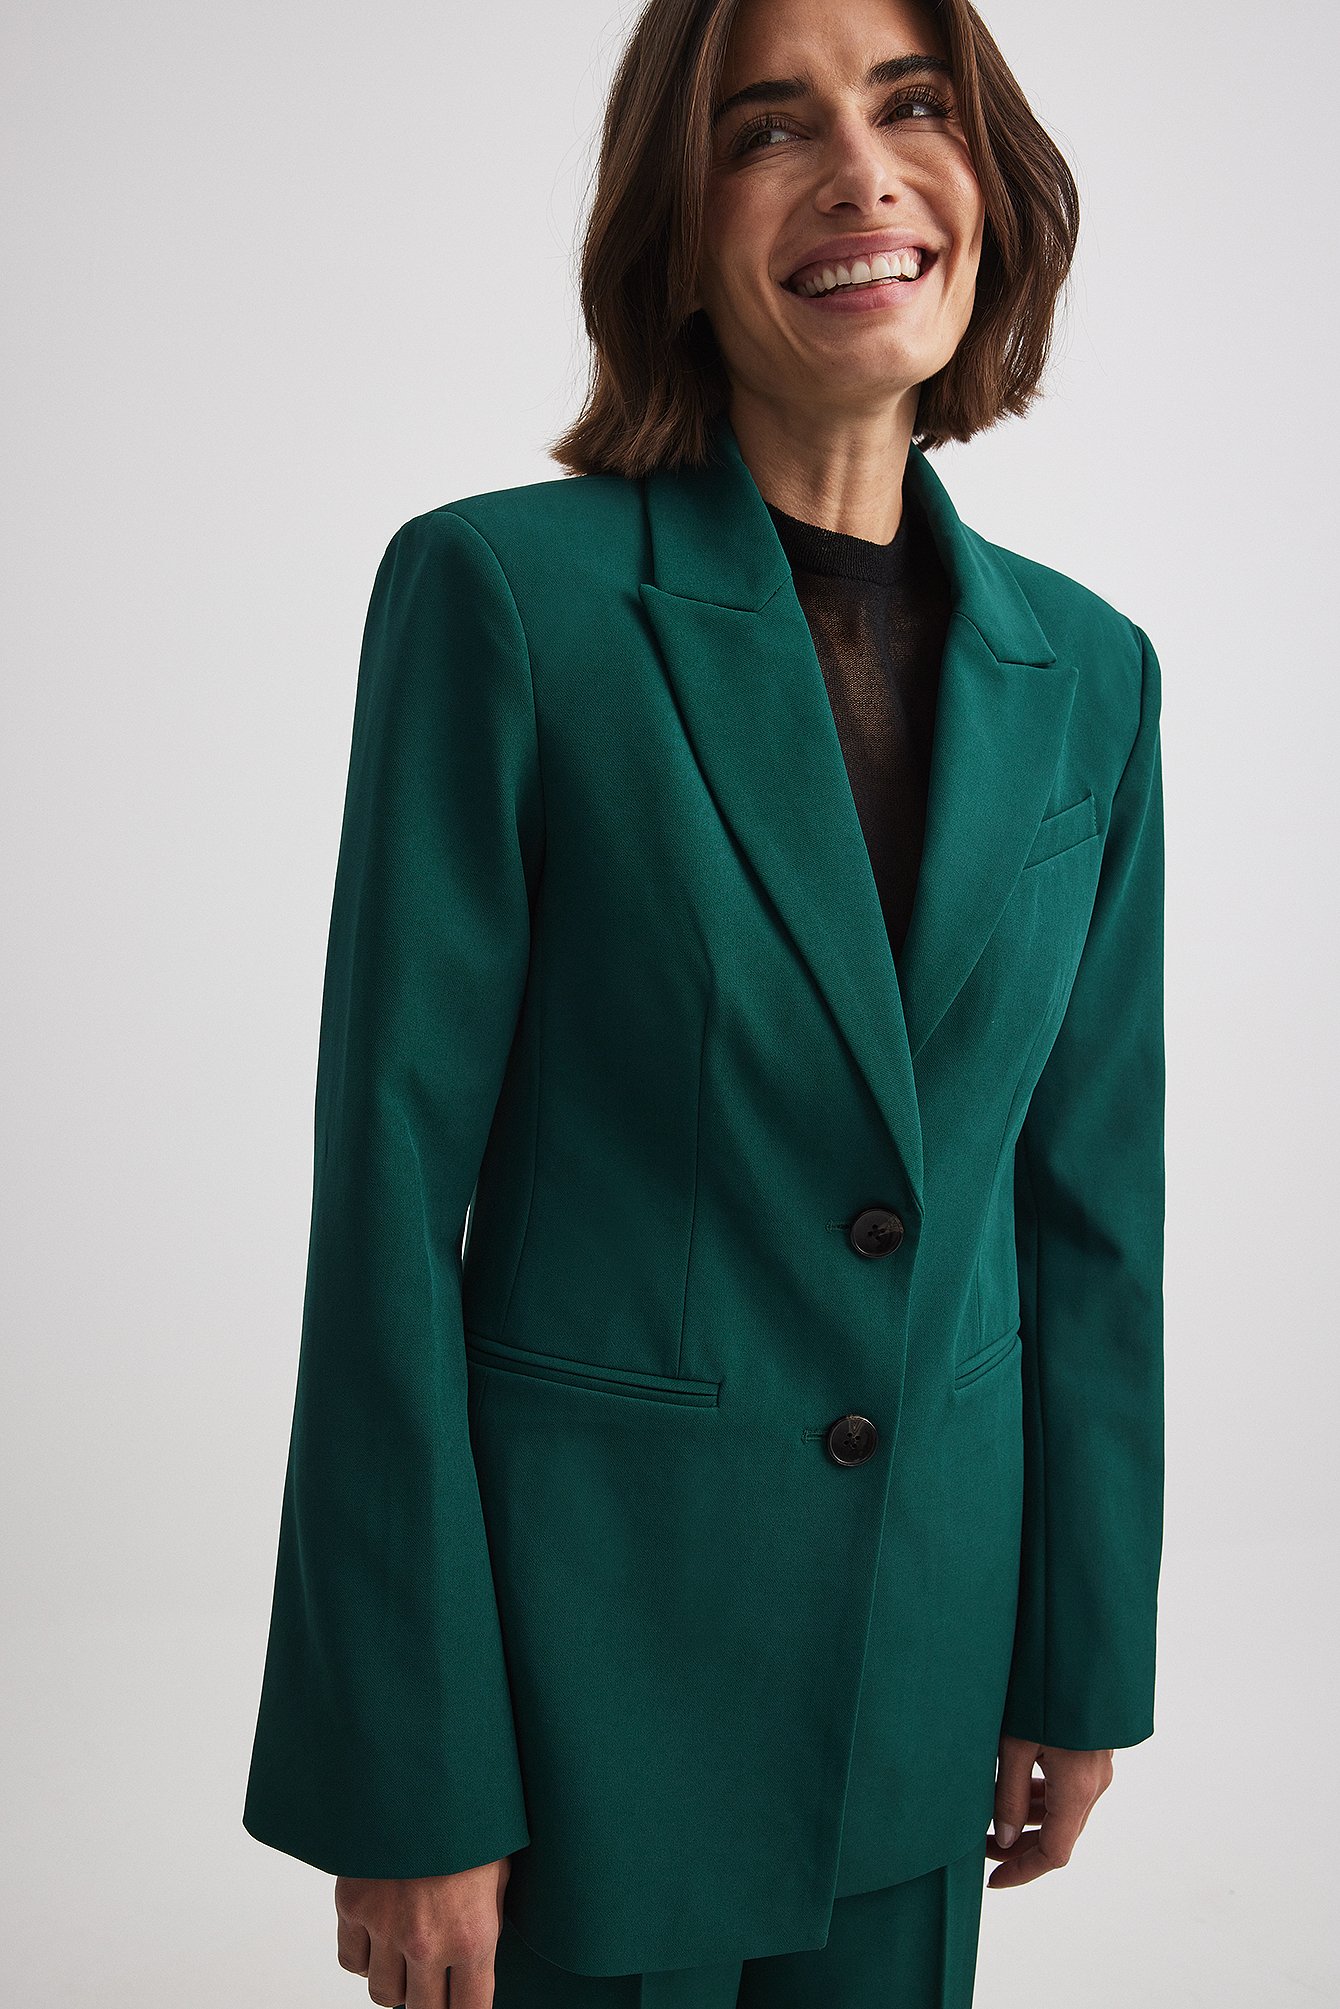 Women's Dark Green Suit  Suits for Work, Weddings & More